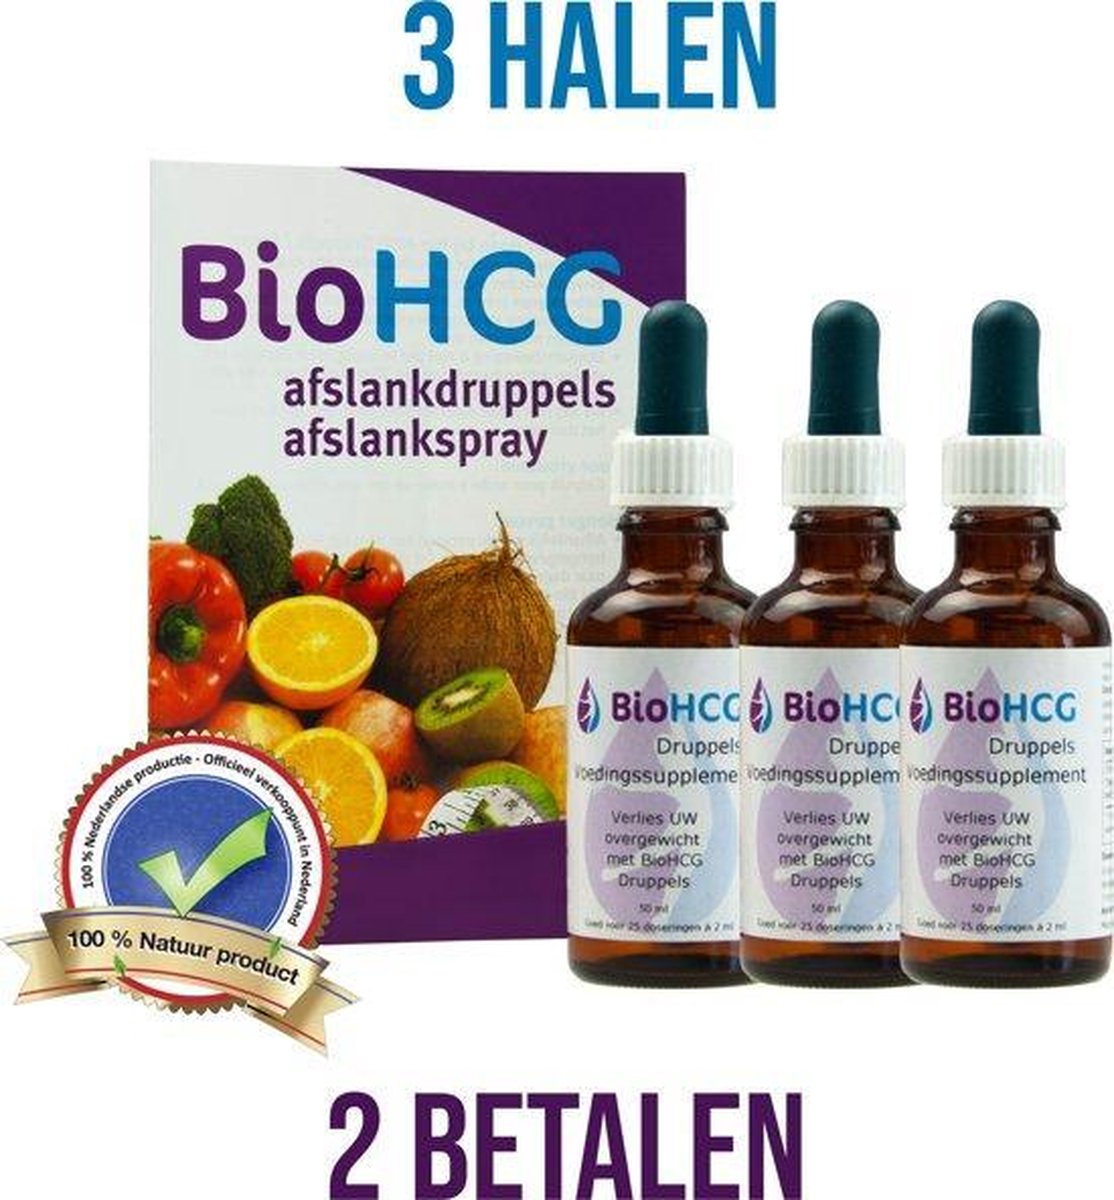 3x BioHCG Afslank Druppels - Bio HCG Druppels